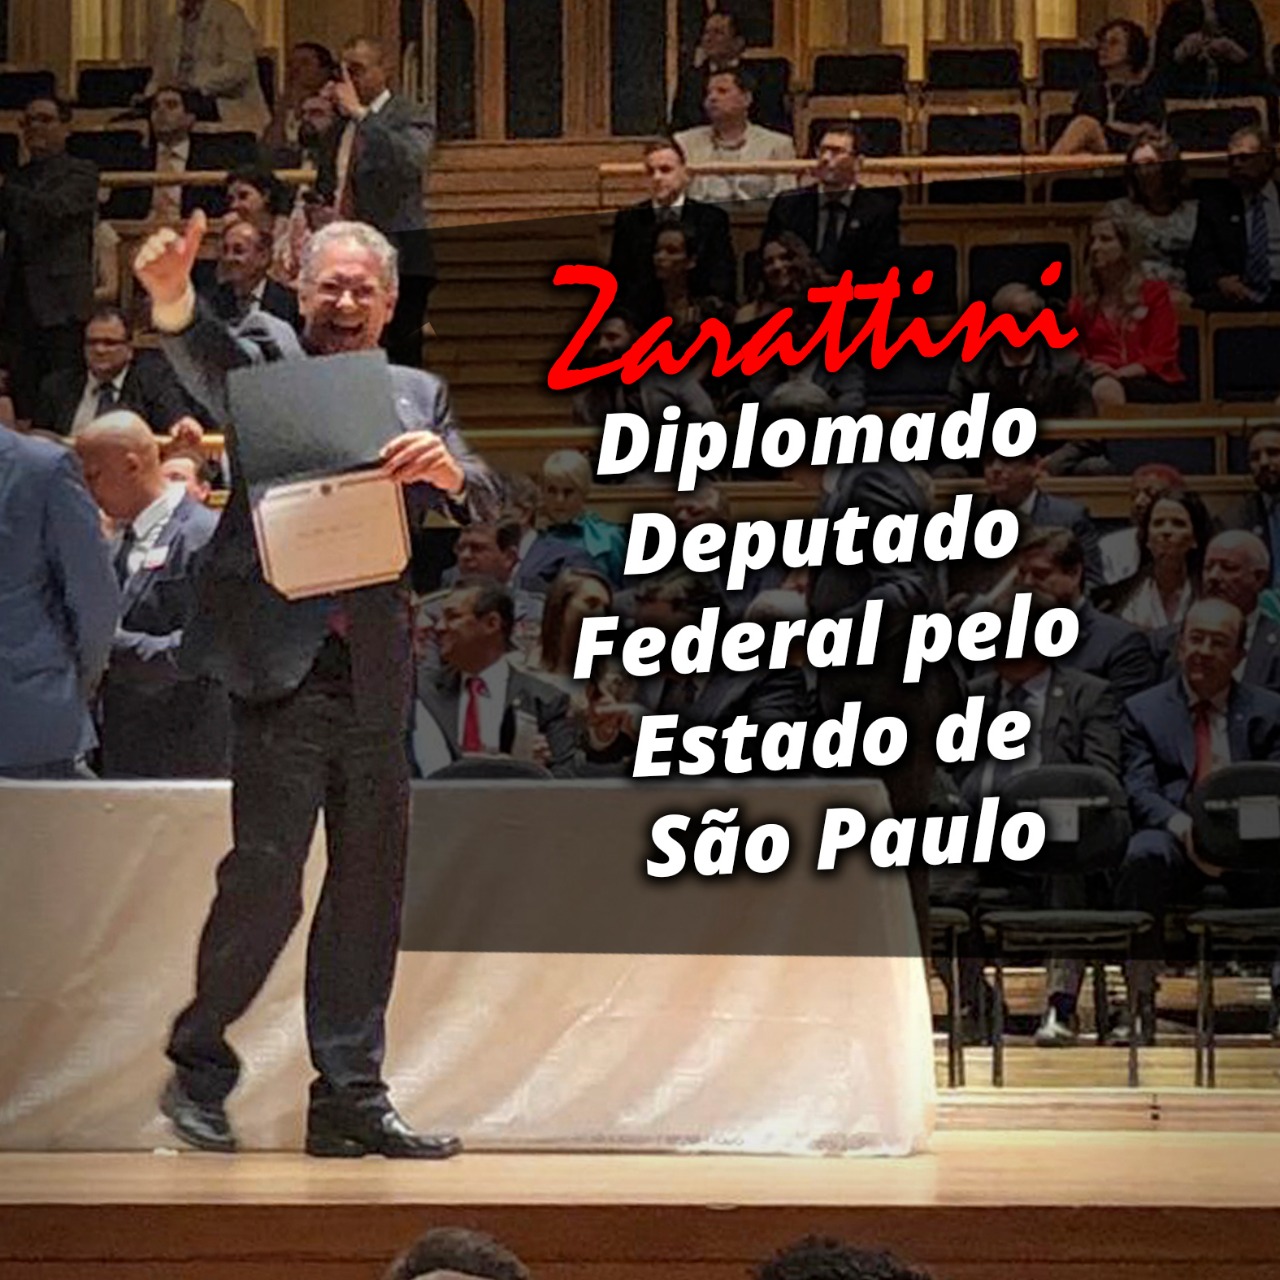 Zarattini é diplomado deputado federal pelo PT de São Paulo